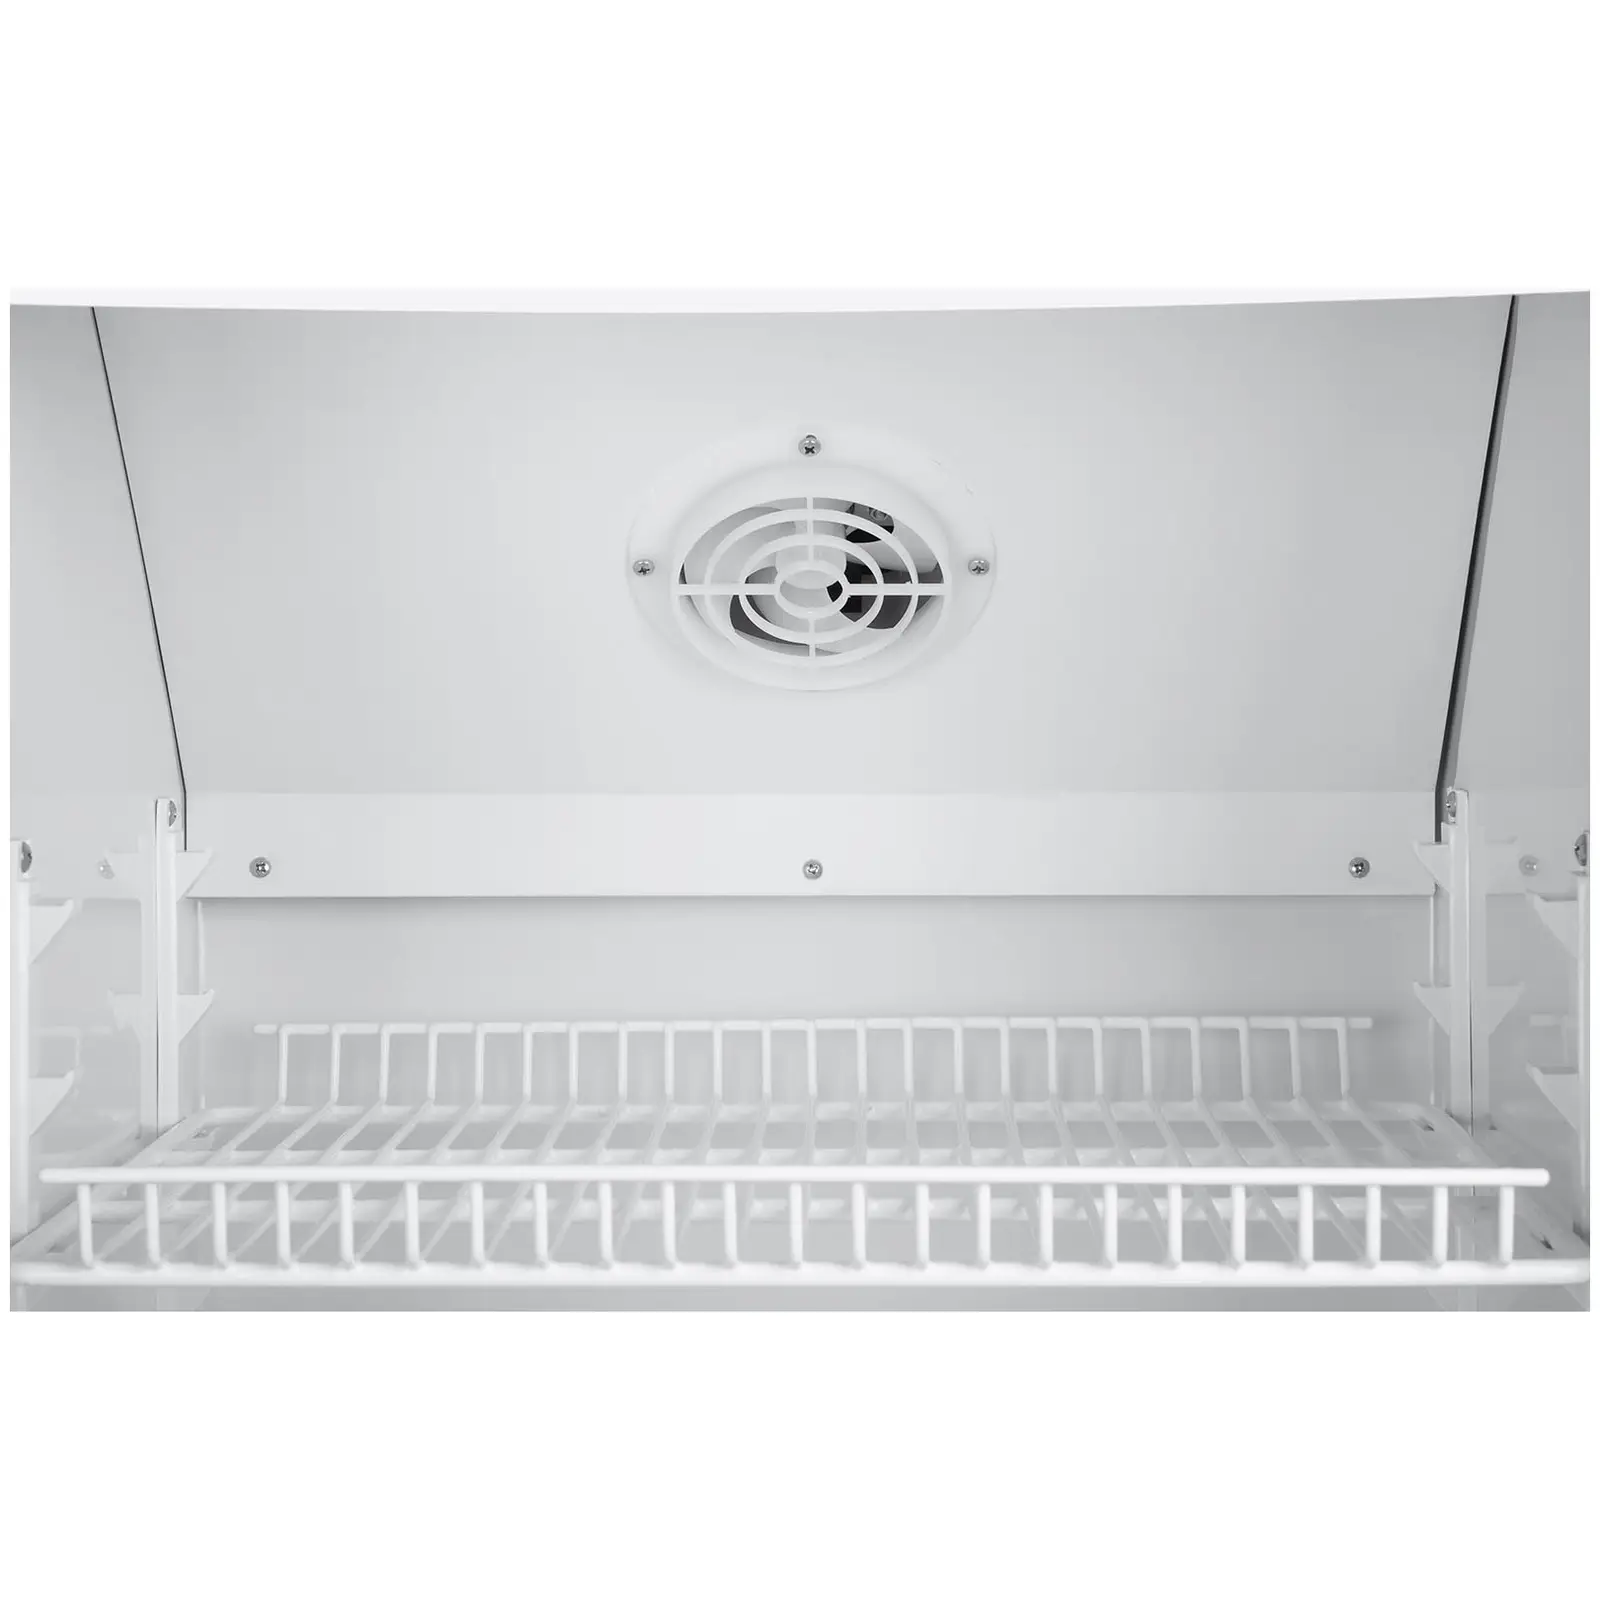 Хладилник за търговски цели за напитки - 238 л - LED